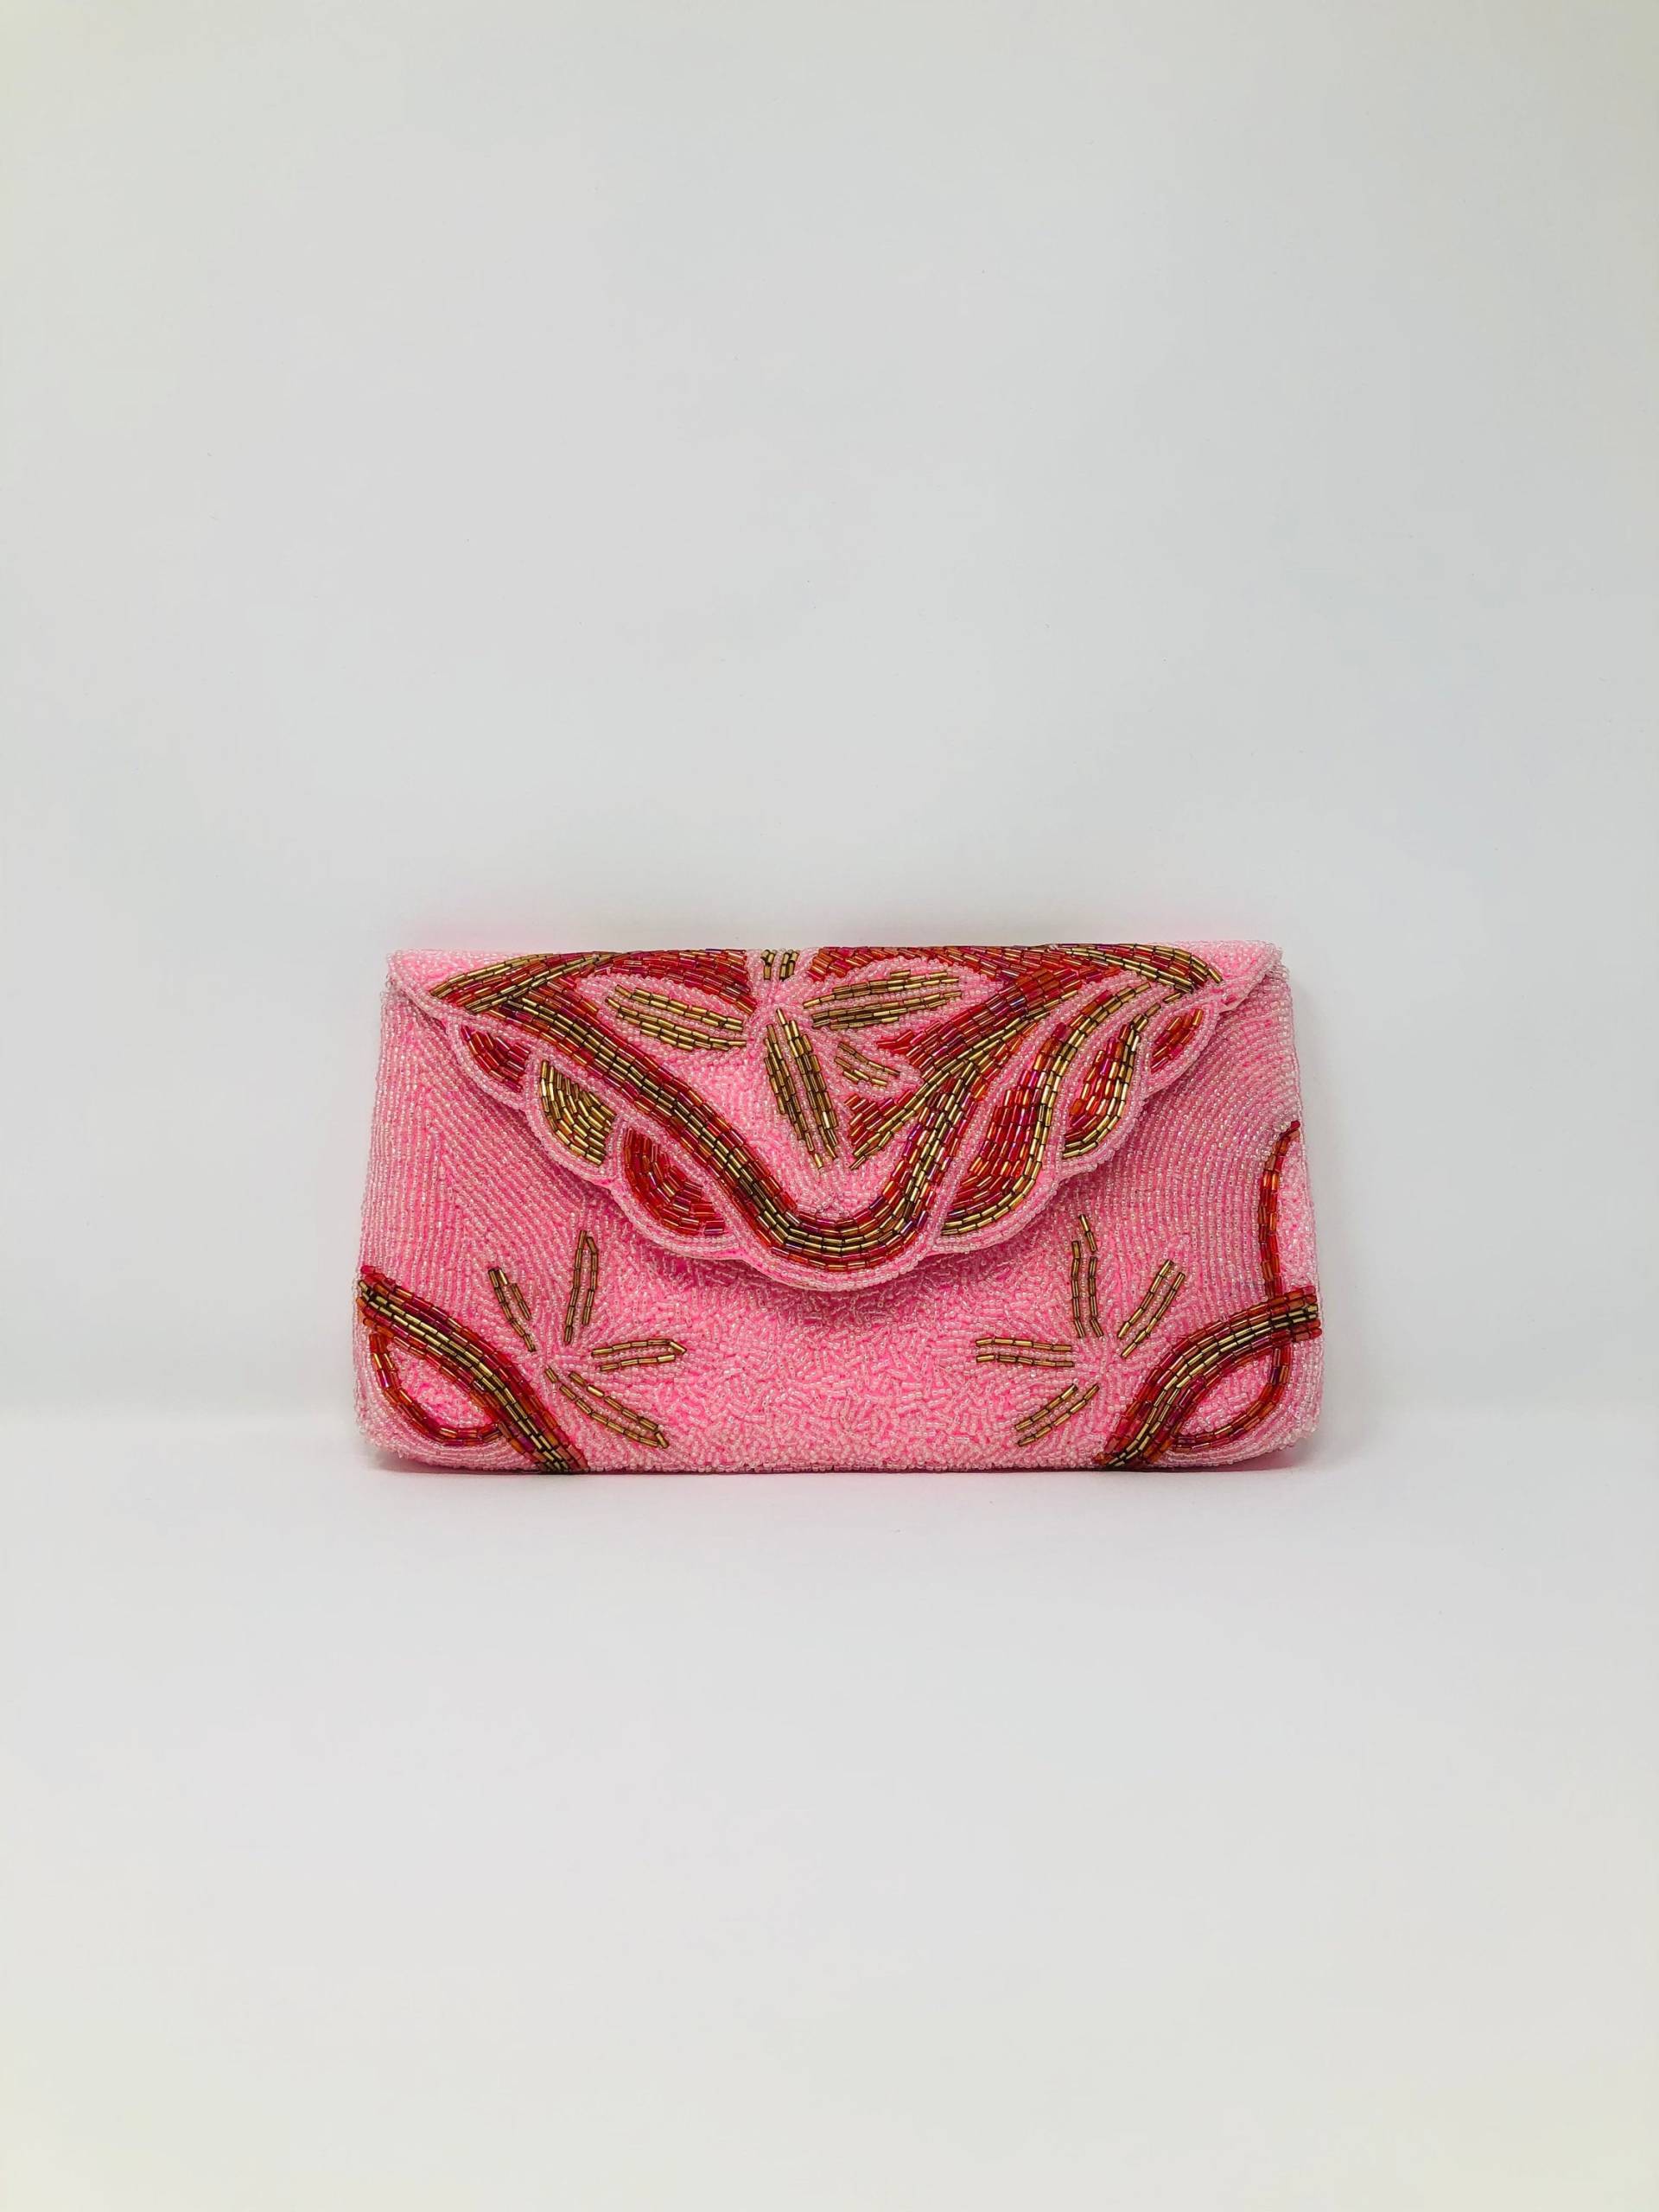 Rosa Perlen Geschmückte Art Deco Handtasche // Vintage Clutch Rote Perlentasche von braxae